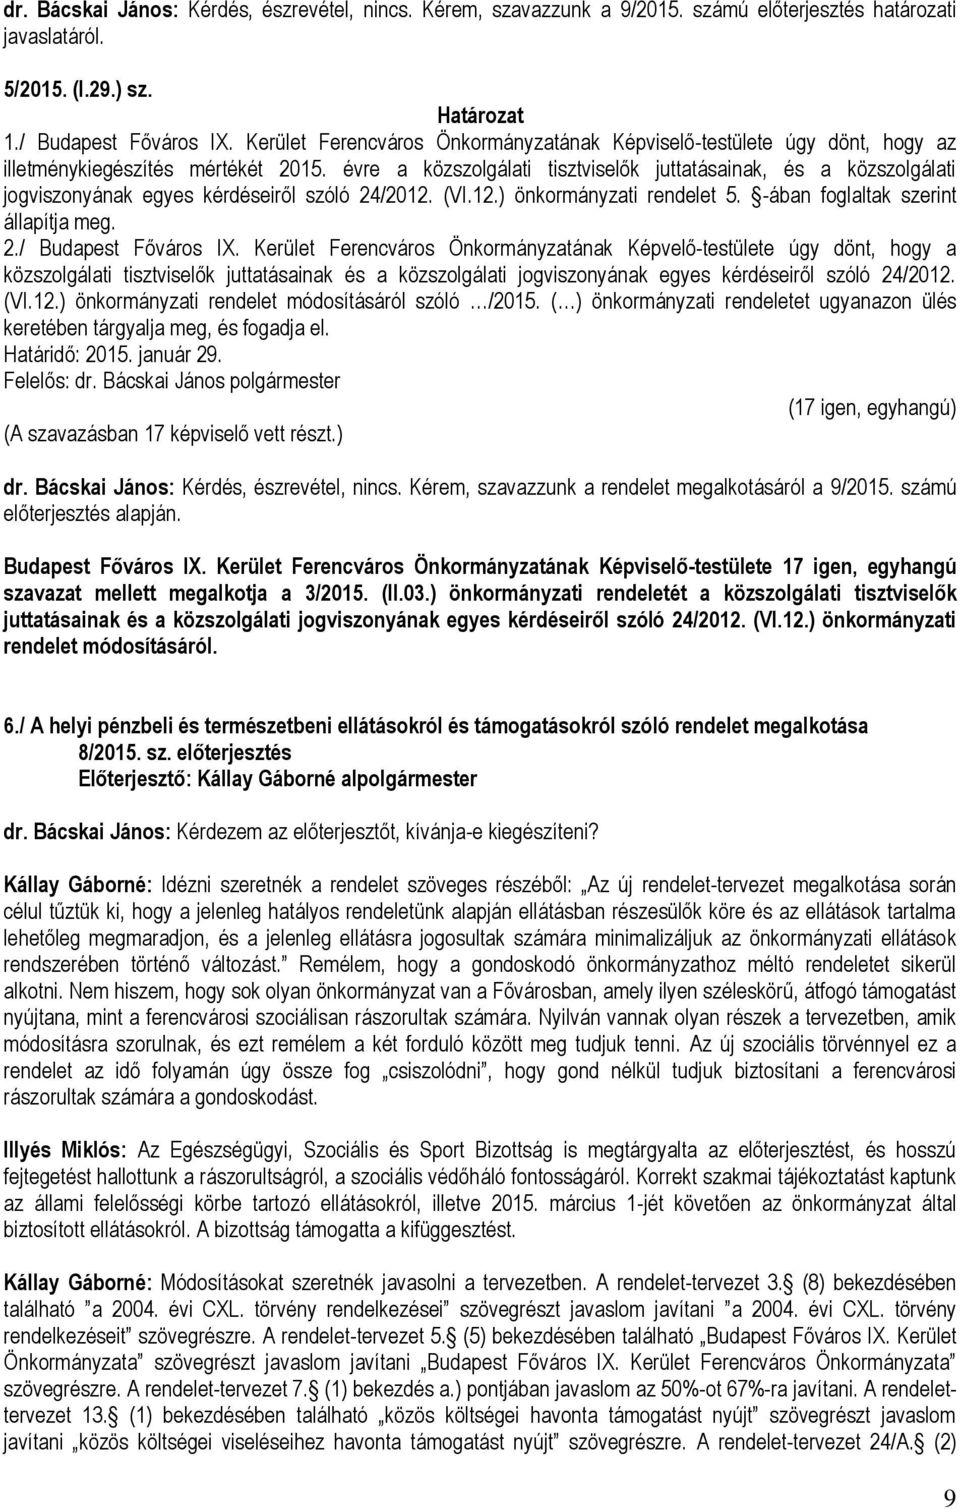 évre a közszolgálati tisztviselők juttatásainak, és a közszolgálati jogviszonyának egyes kérdéseiről szóló 24/2012. (VI.12.) önkormányzati rendelet 5. -ában foglaltak szerint állapítja meg. 2./ Budapest Főváros IX.